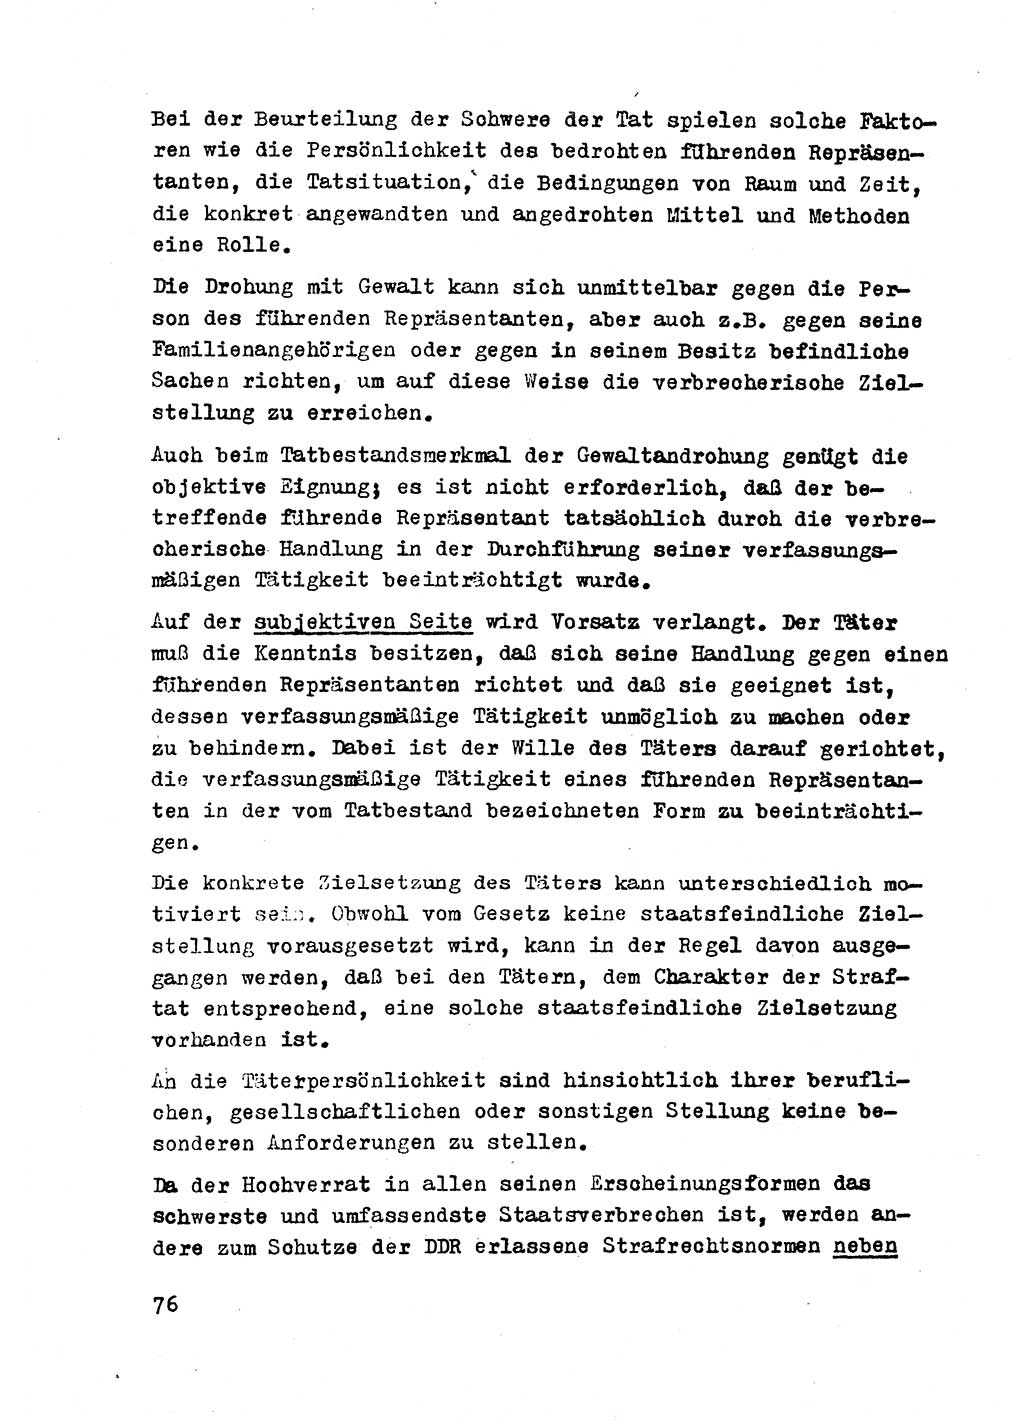 Strafrecht der DDR (Deutsche Demokratische Republik), Besonderer Teil, Lehrmaterial, Heft 2 1969, Seite 76 (Strafr. DDR BT Lehrmat. H. 2 1969, S. 76)